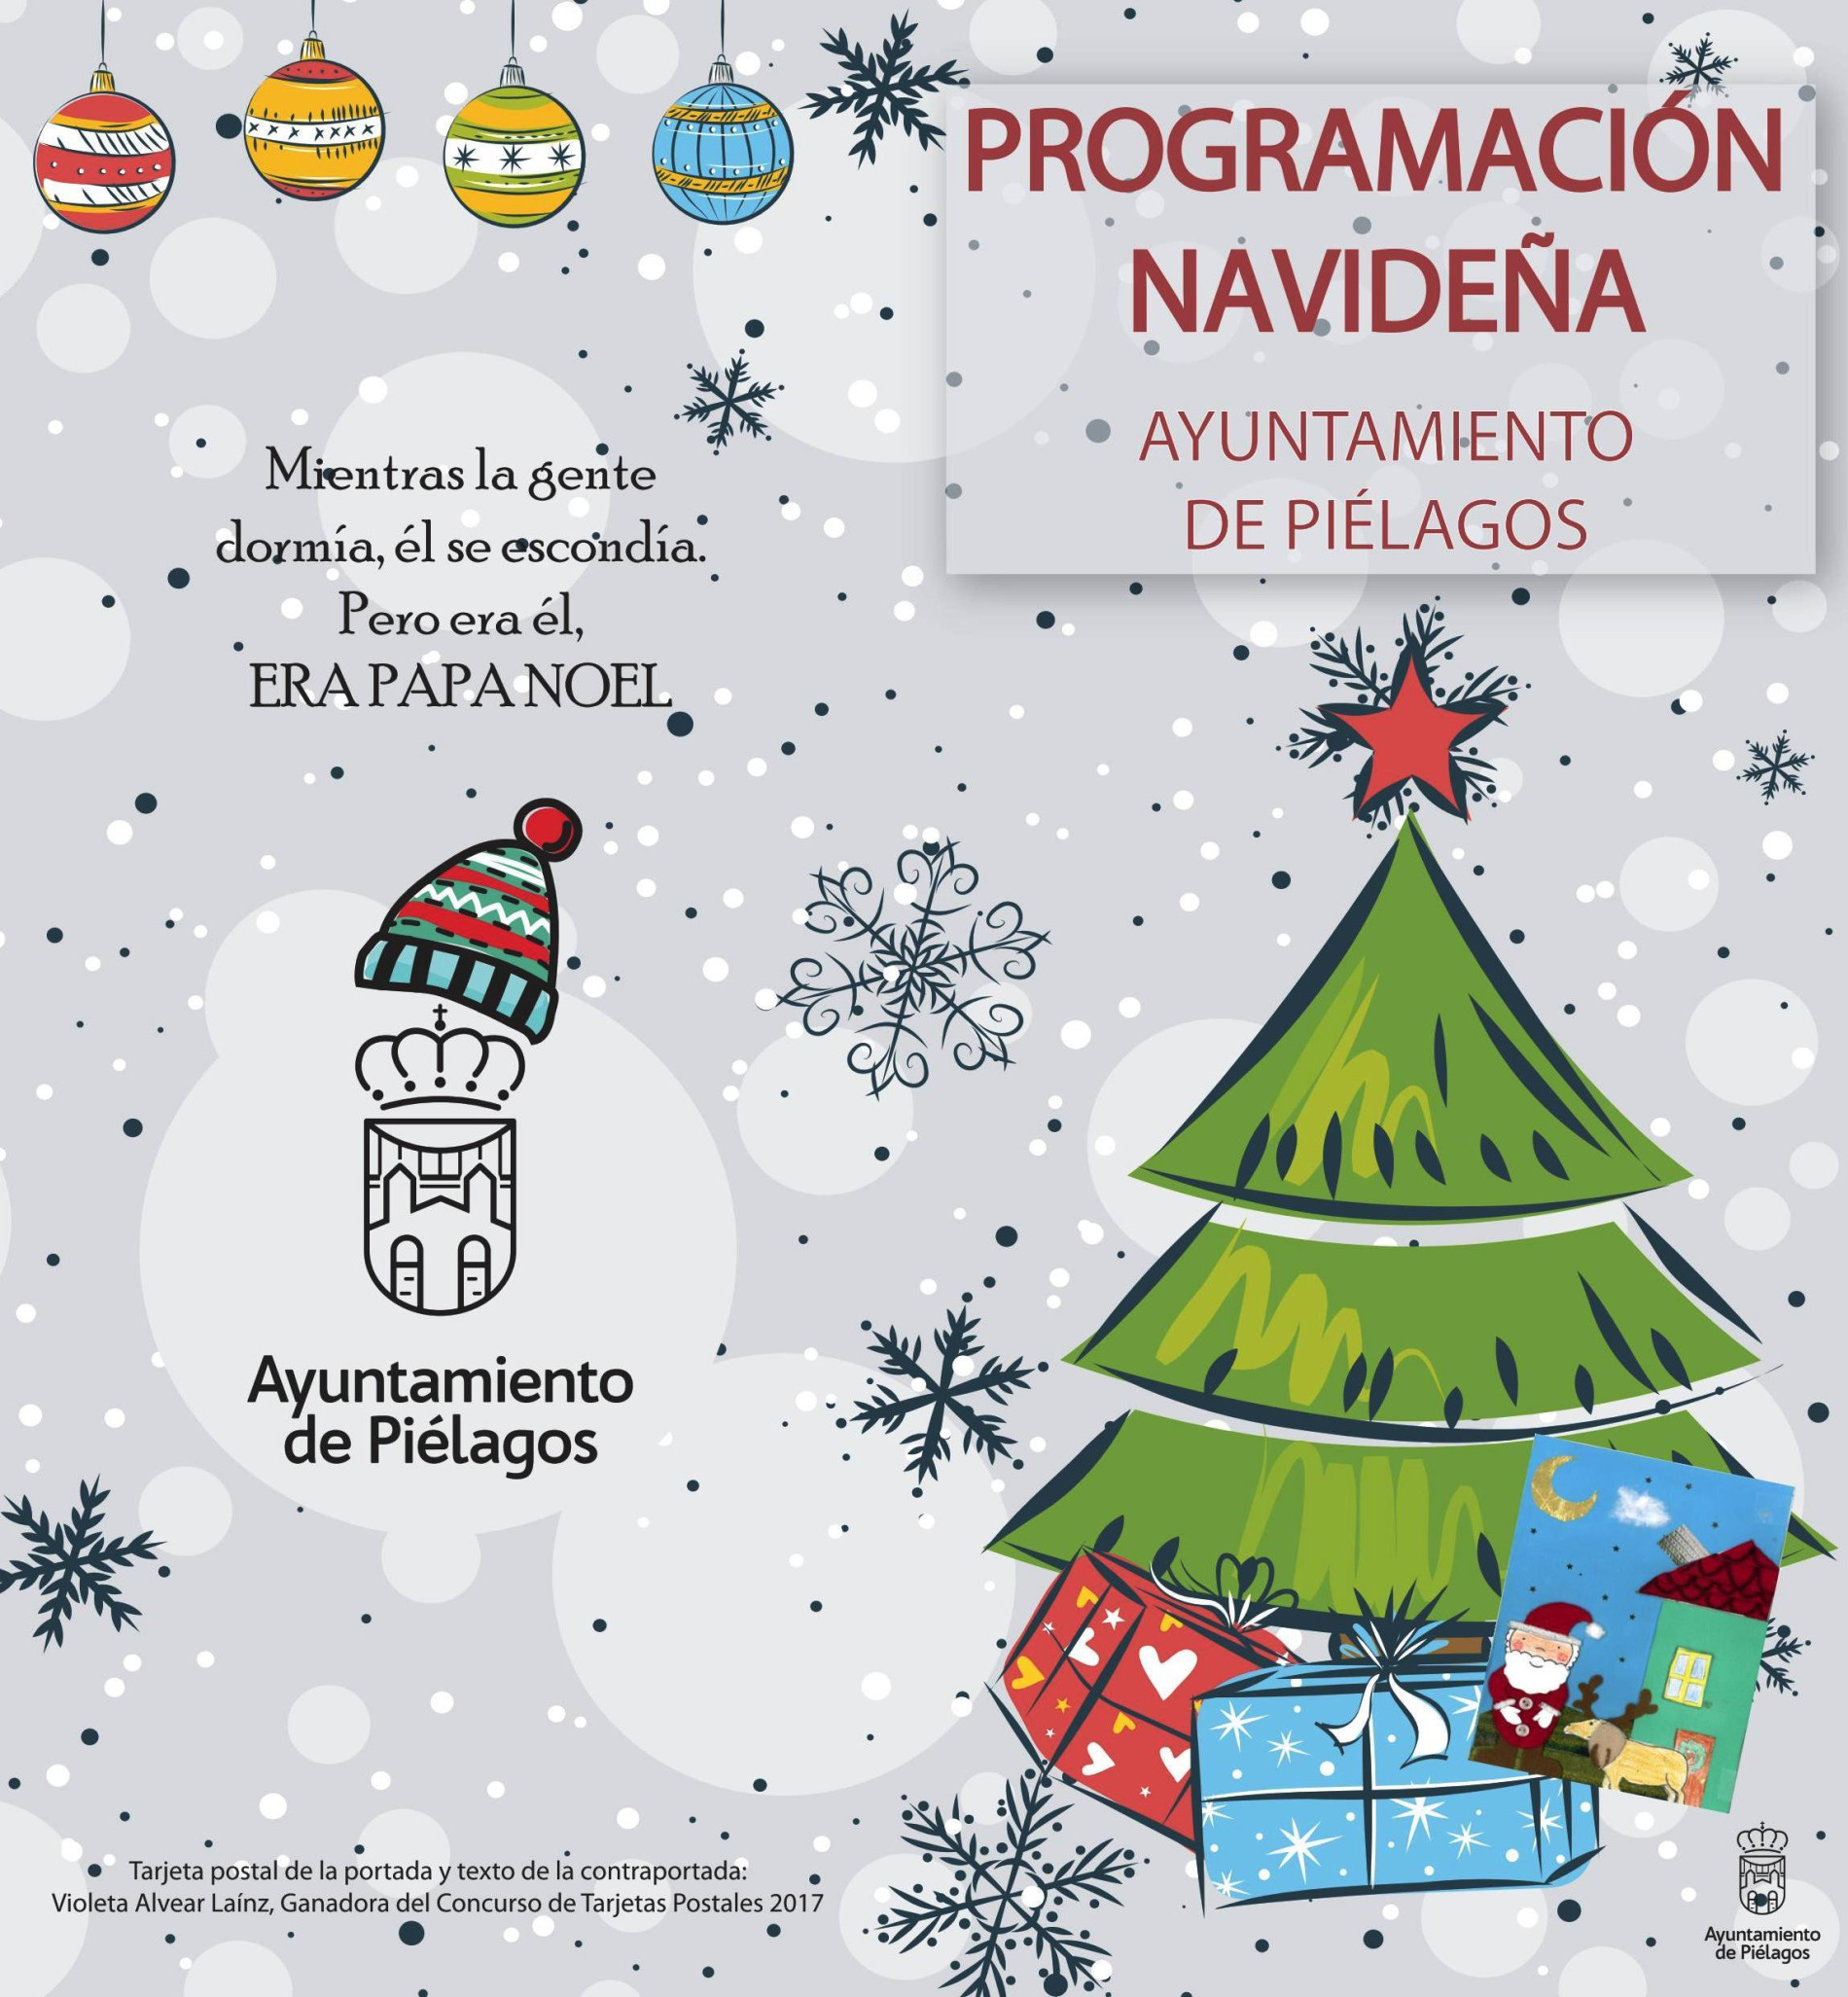 https://www.pielagos.es/noticias/noticia/el-ayuntamiento-de-pielagos-organizara-del-5-de-diciembre-al-5-de-enero-un-programa-de-actividades-navidenas-que-se-desarrollara-en-distintas-localidades-del-municipio